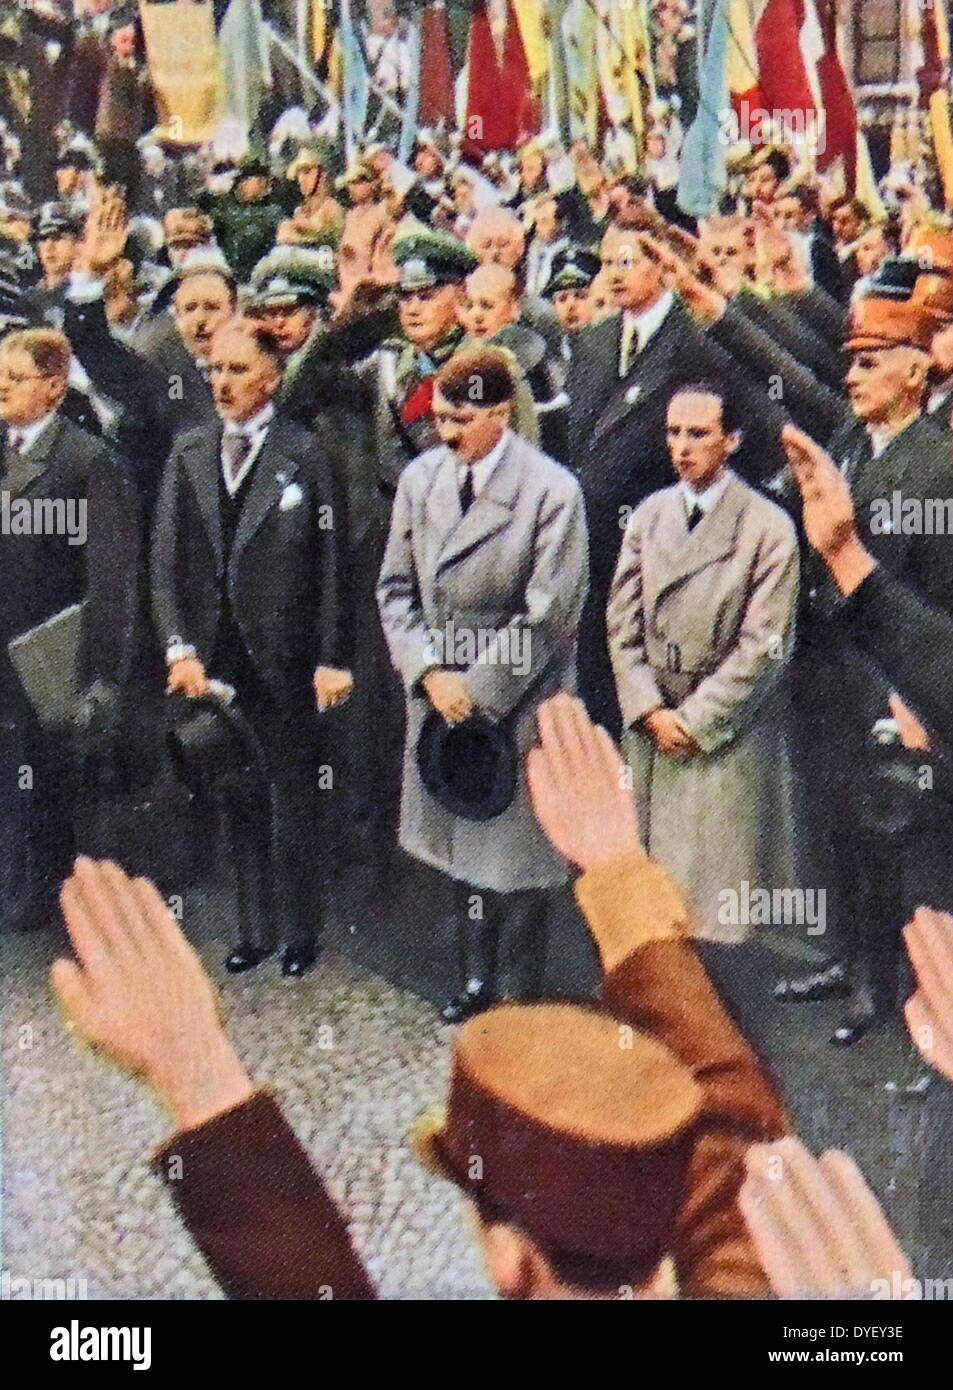 Il Vice Cancelliere von Papen, Adolf Hitler e Josef Goebbels circa 1933 Foto Stock